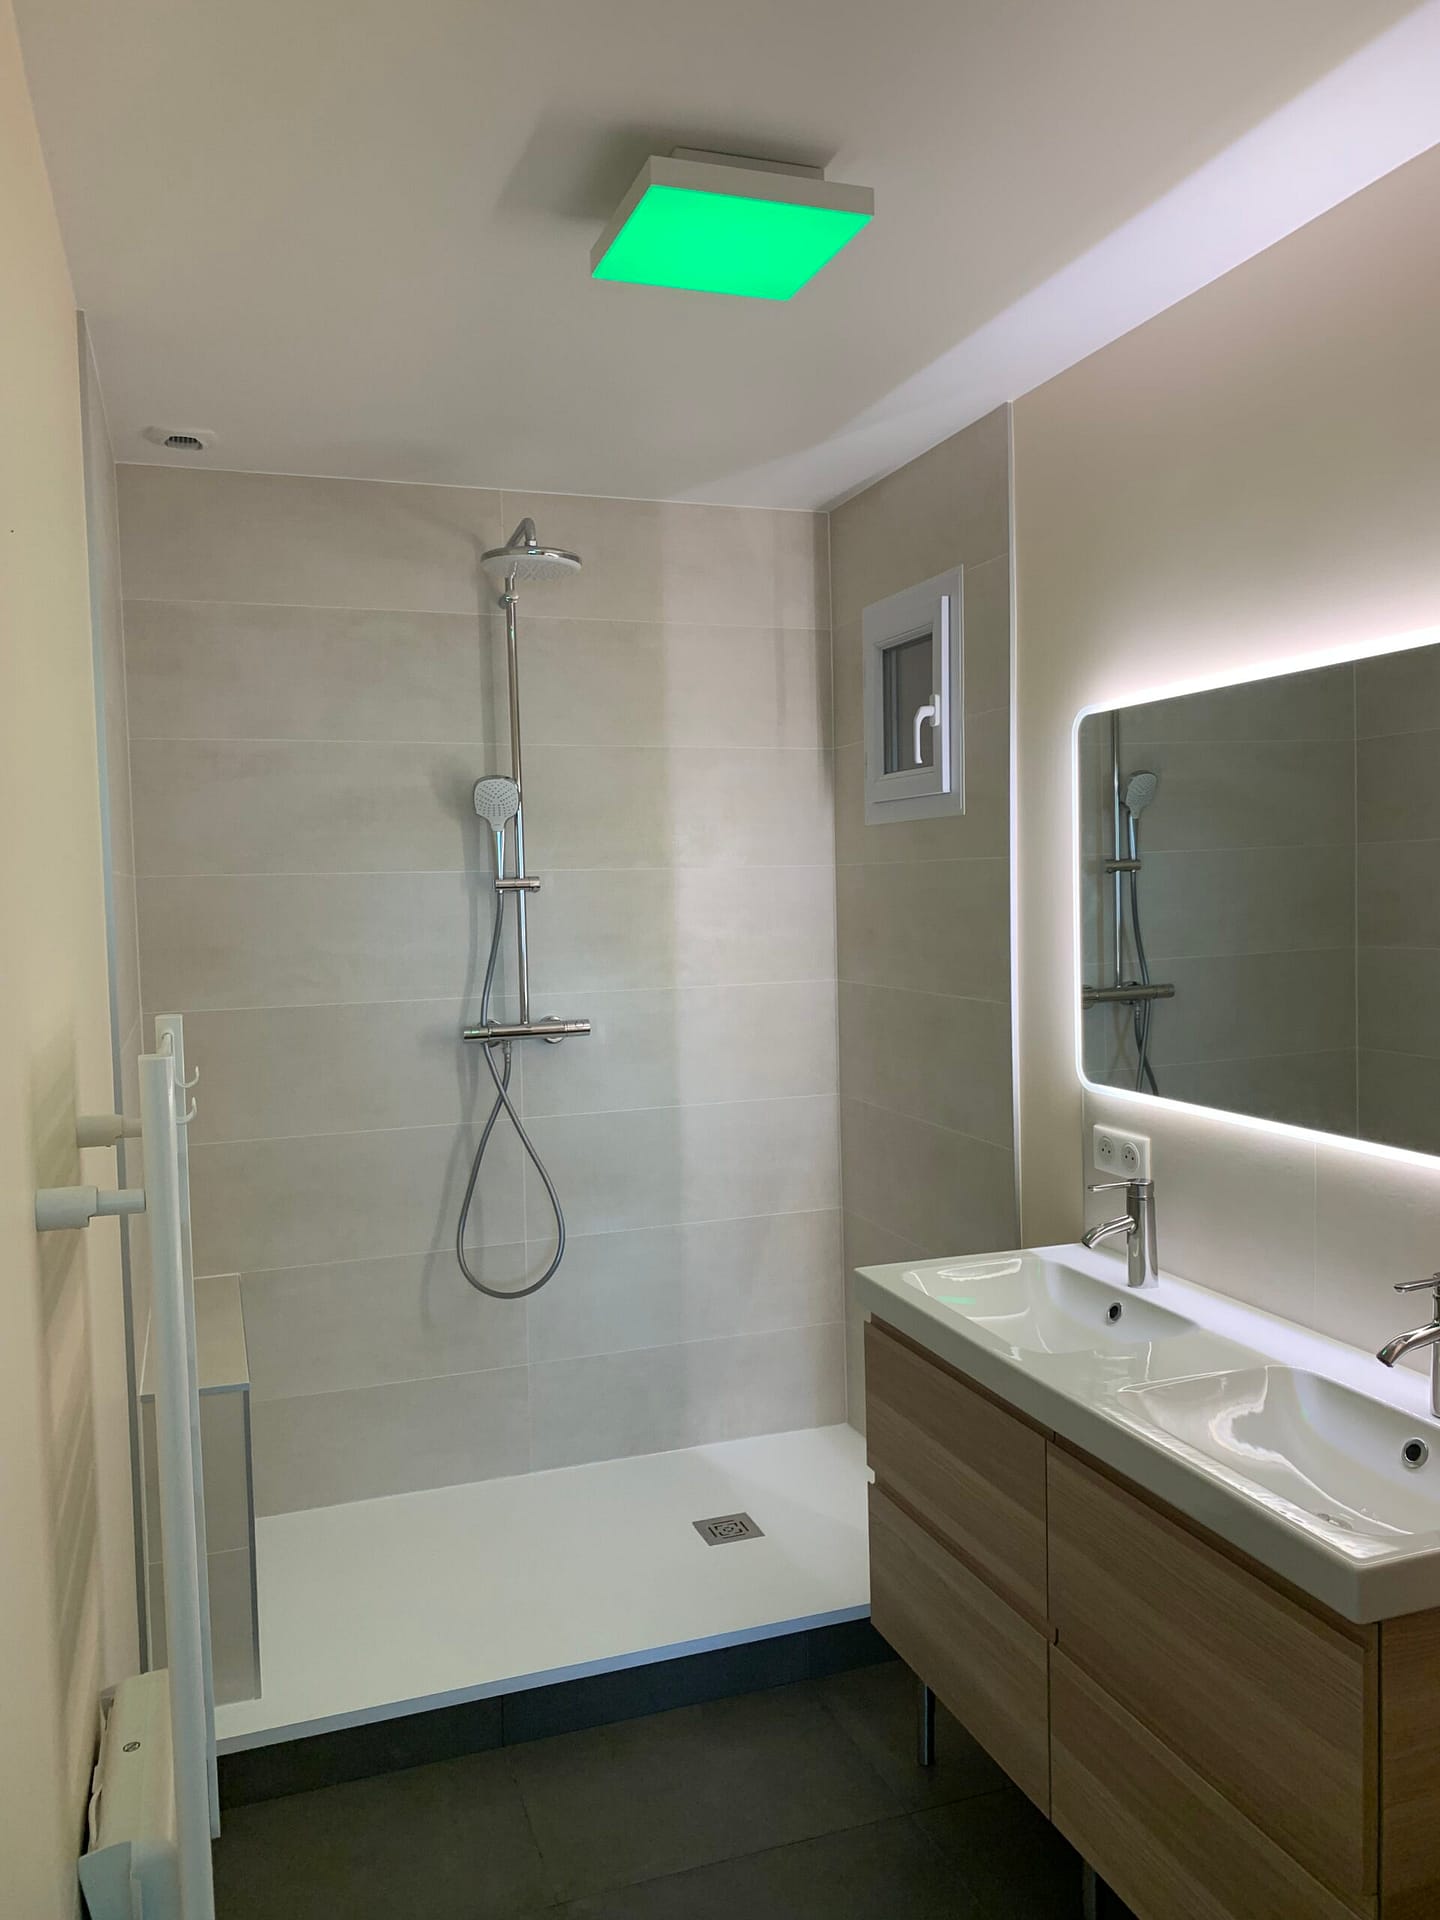 Salle de bains moderne avec éclairage encastré, miroir éclairé et meuble vasque en bois à Ozoir la Ferrière, réalisée par Design & Couleurs.